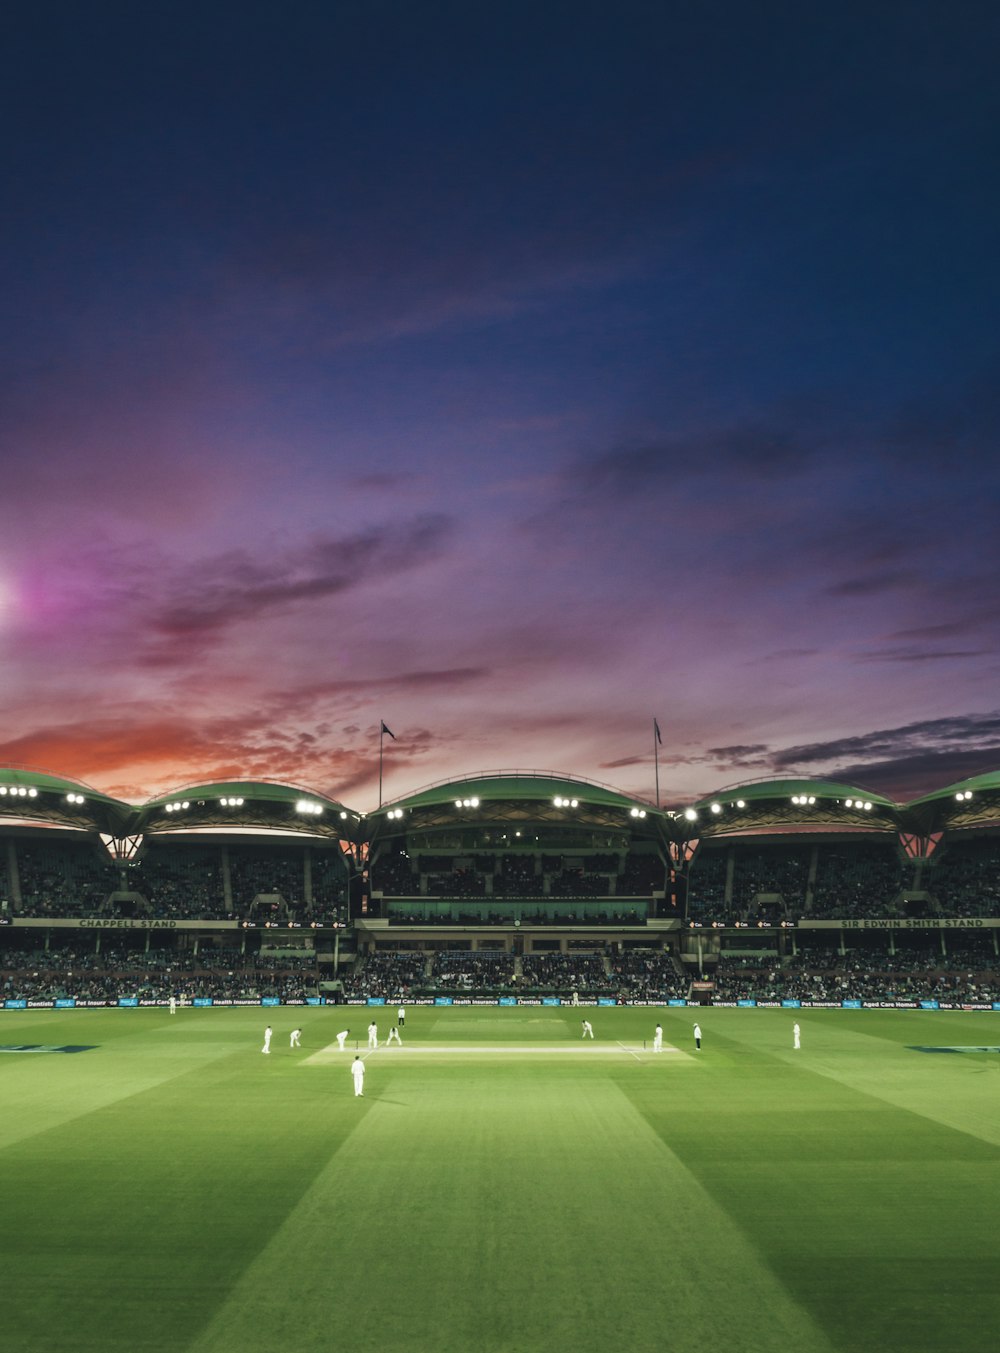 Menschen, die ein Cricket-Spiel bei Sonnenuntergang beobachten